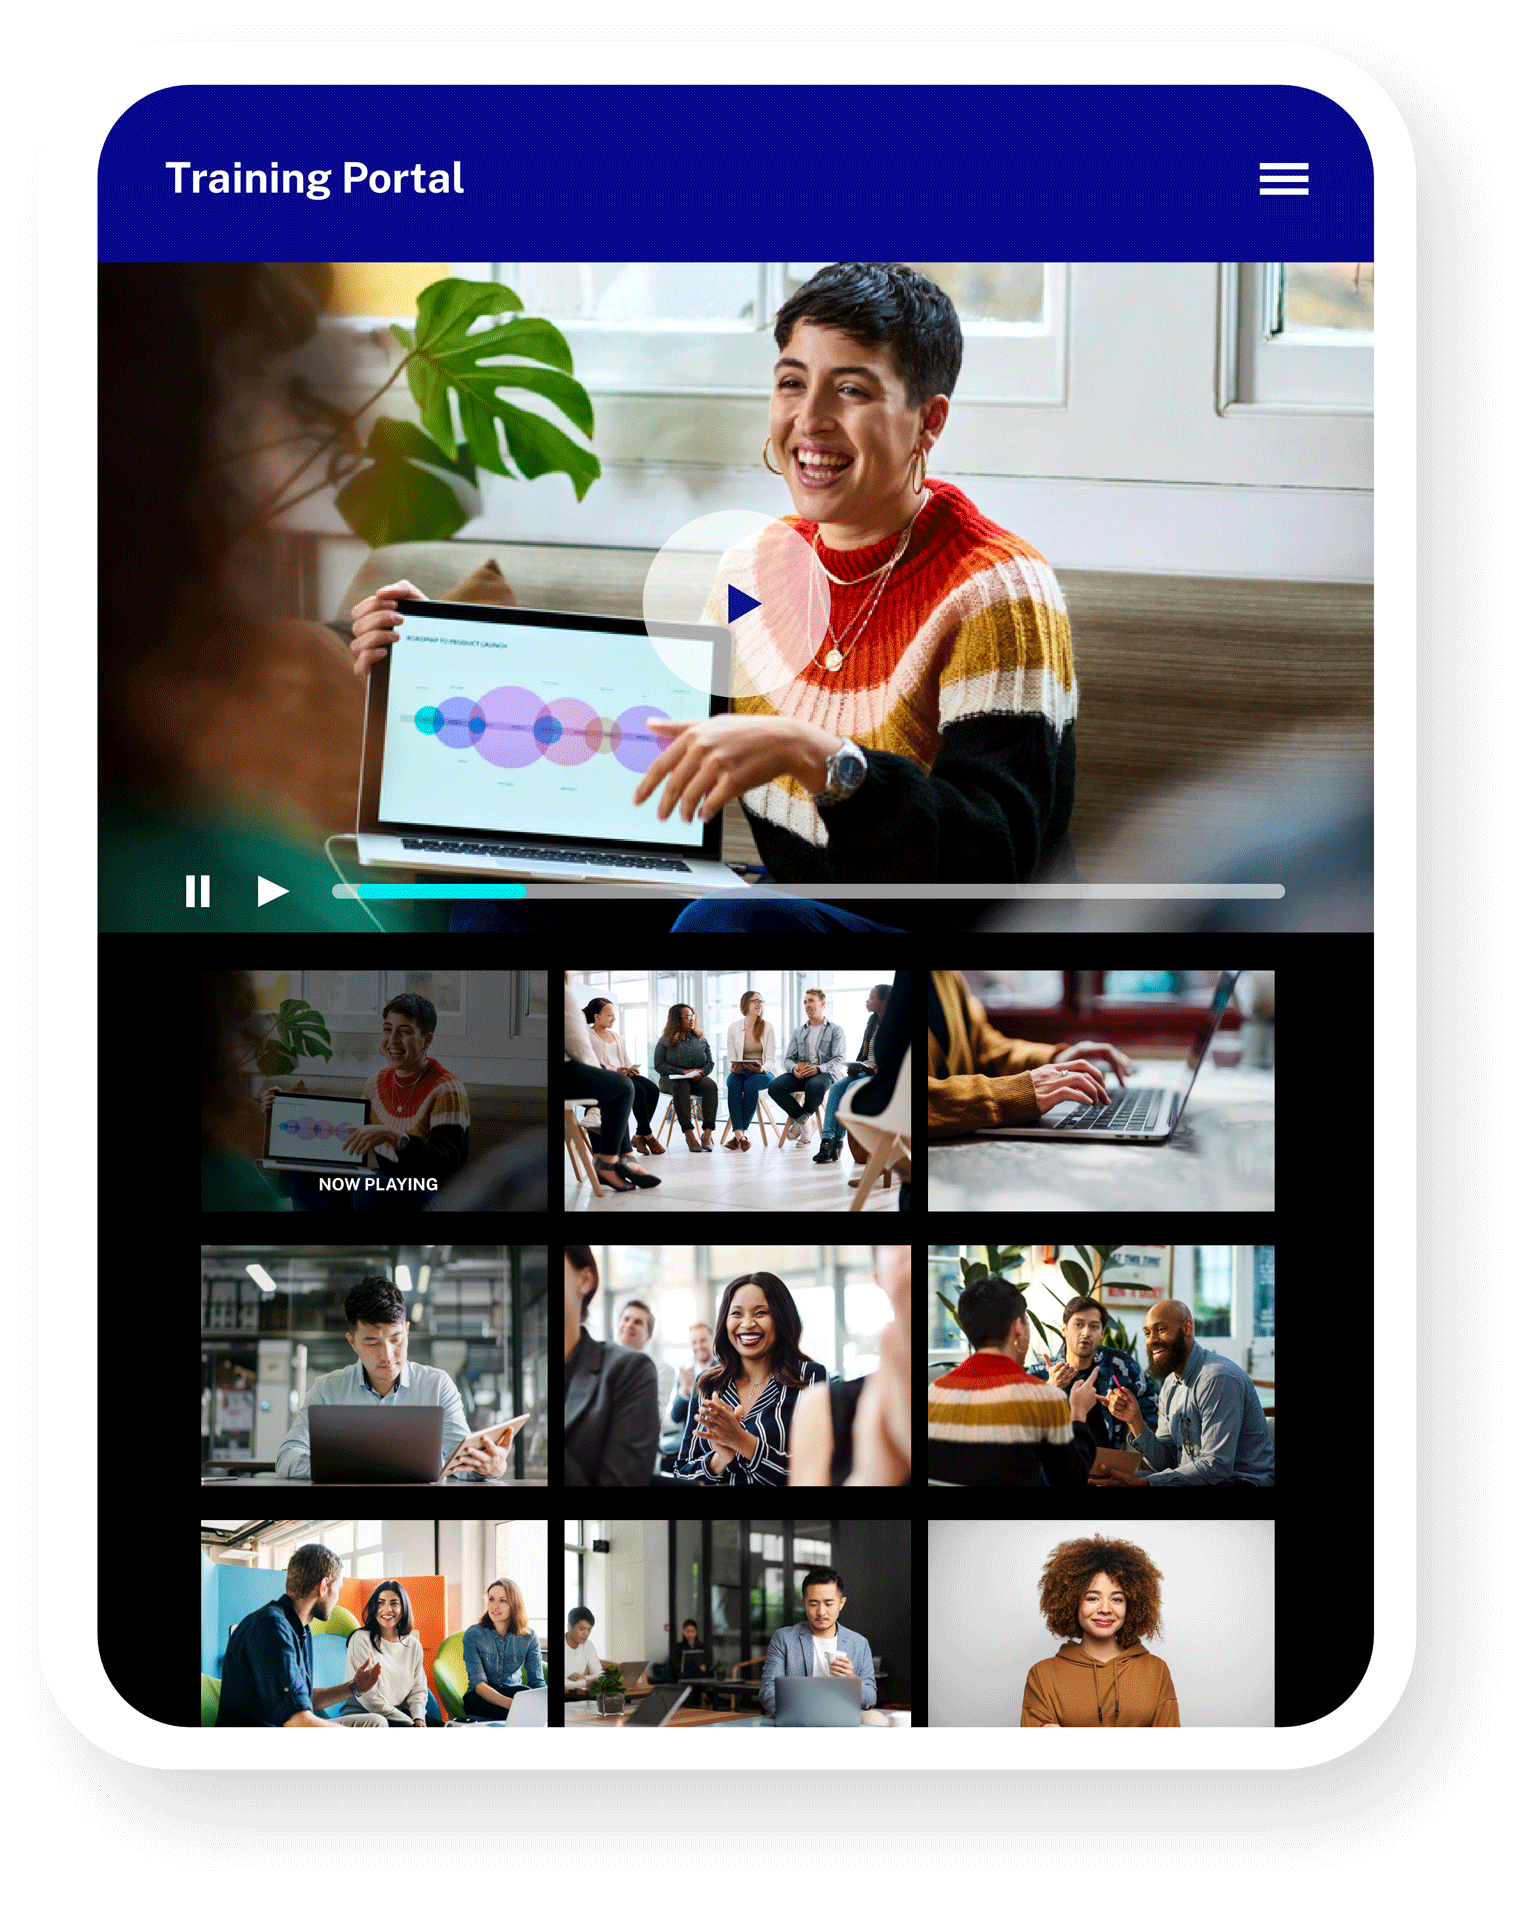 Portal de vídeos de formación para empleados en una tablet